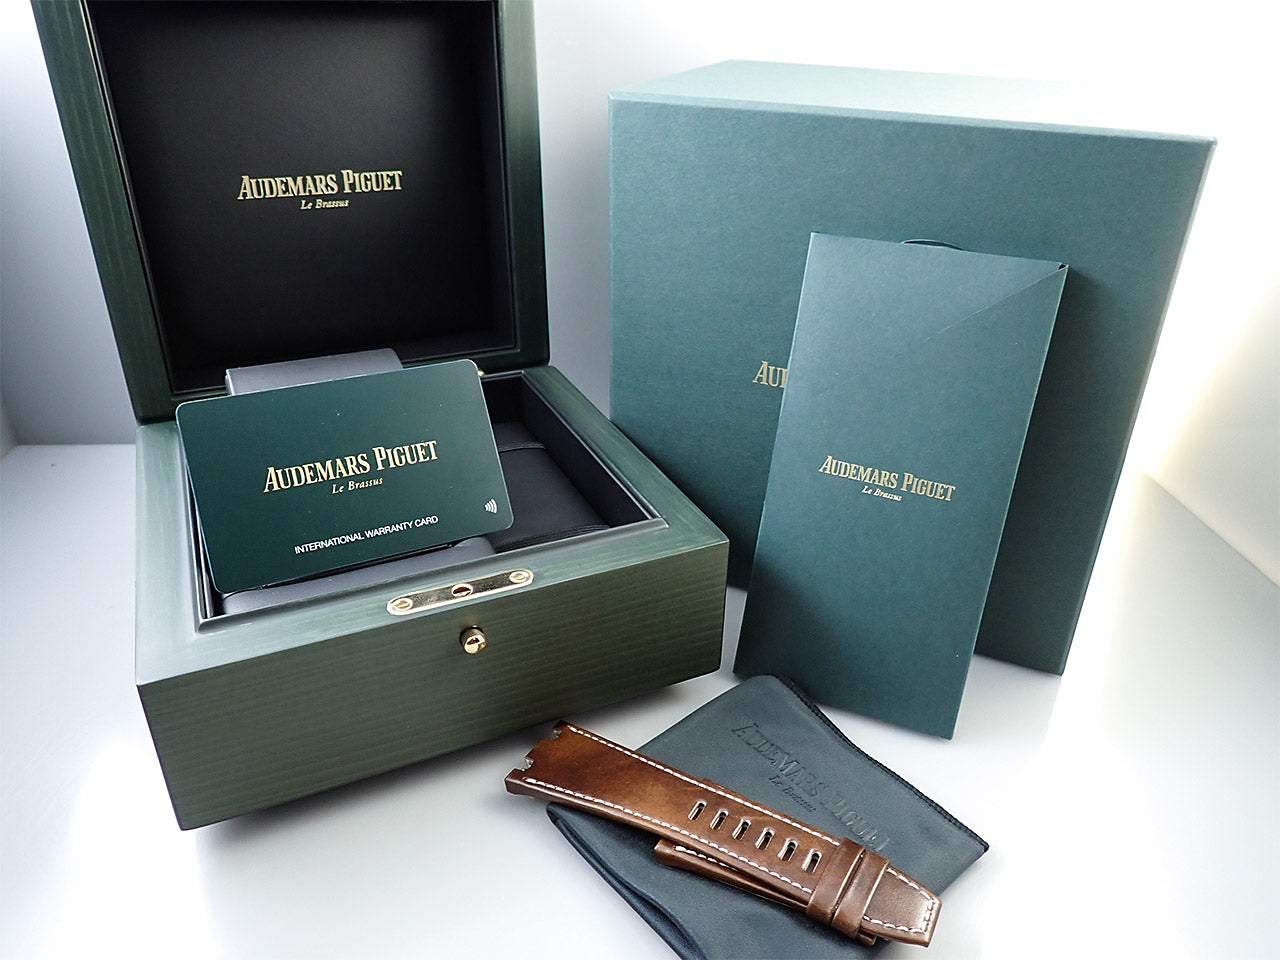 Audemars Piguet Royal Oak Offshore Chronograph &lt;Warranty, Box, etc.&gt;